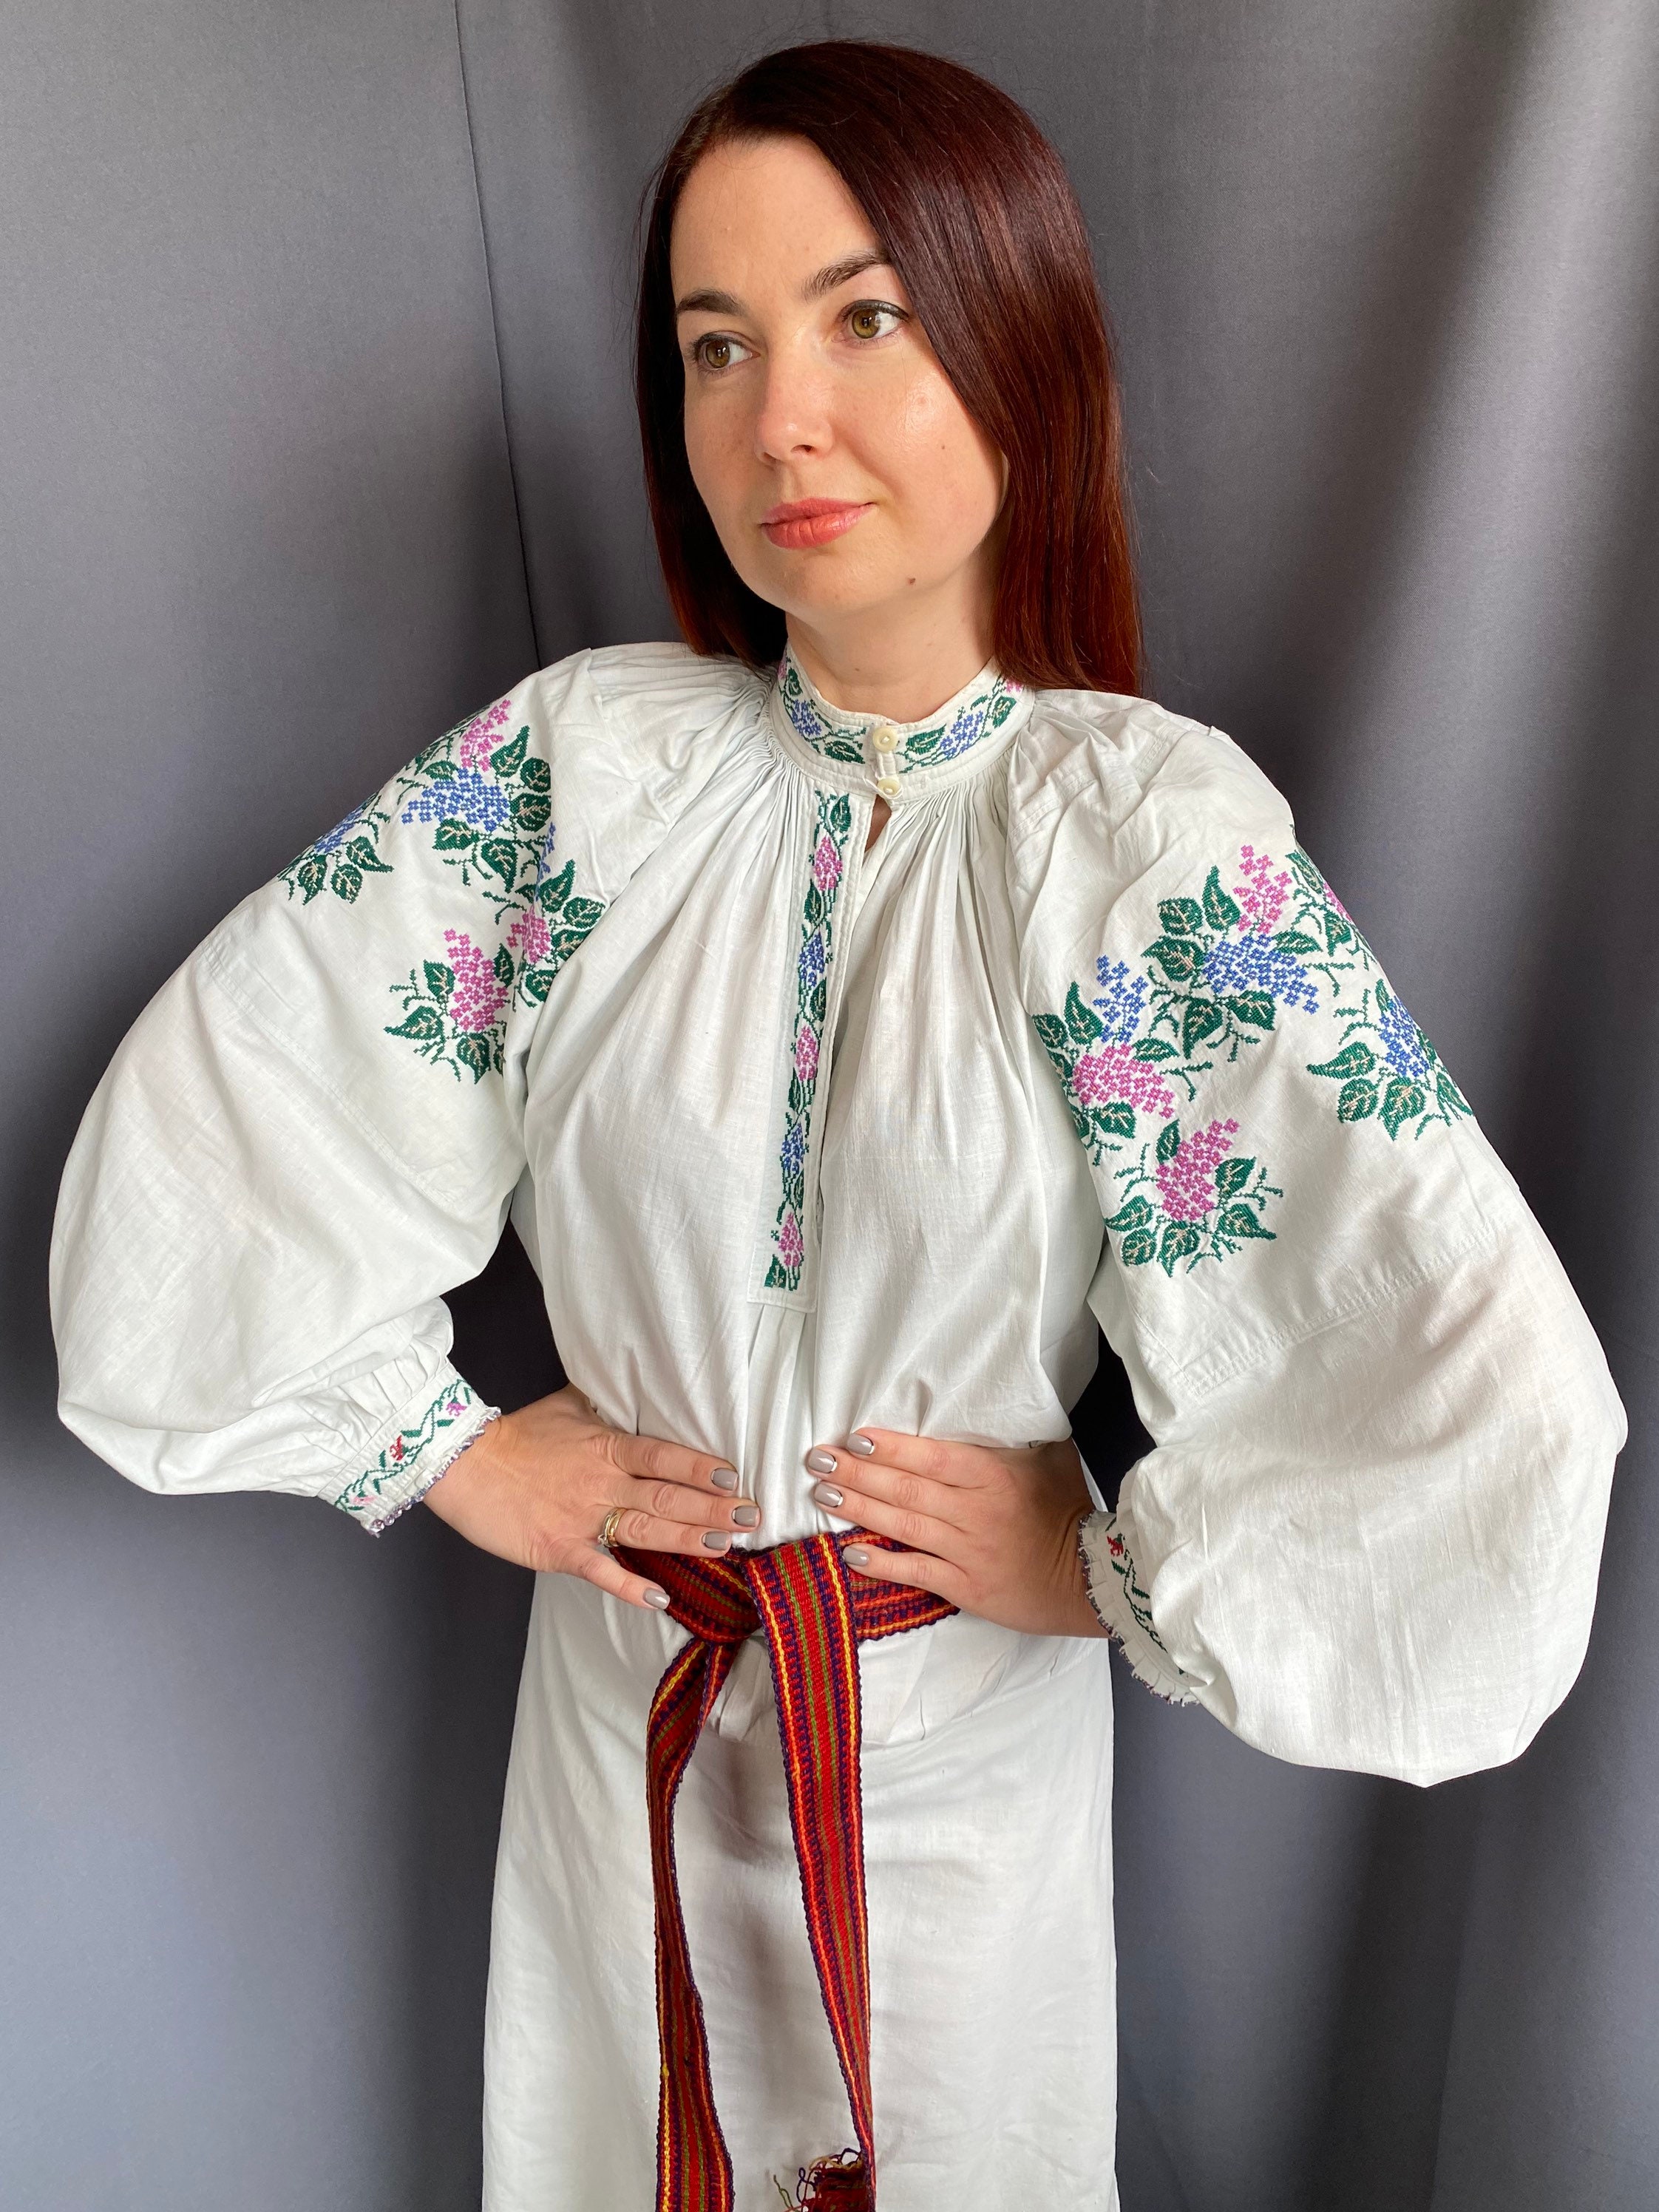 Embroidered Shirt Ukrainian Vyshyvanka Handmade sorochka folk | Etsy